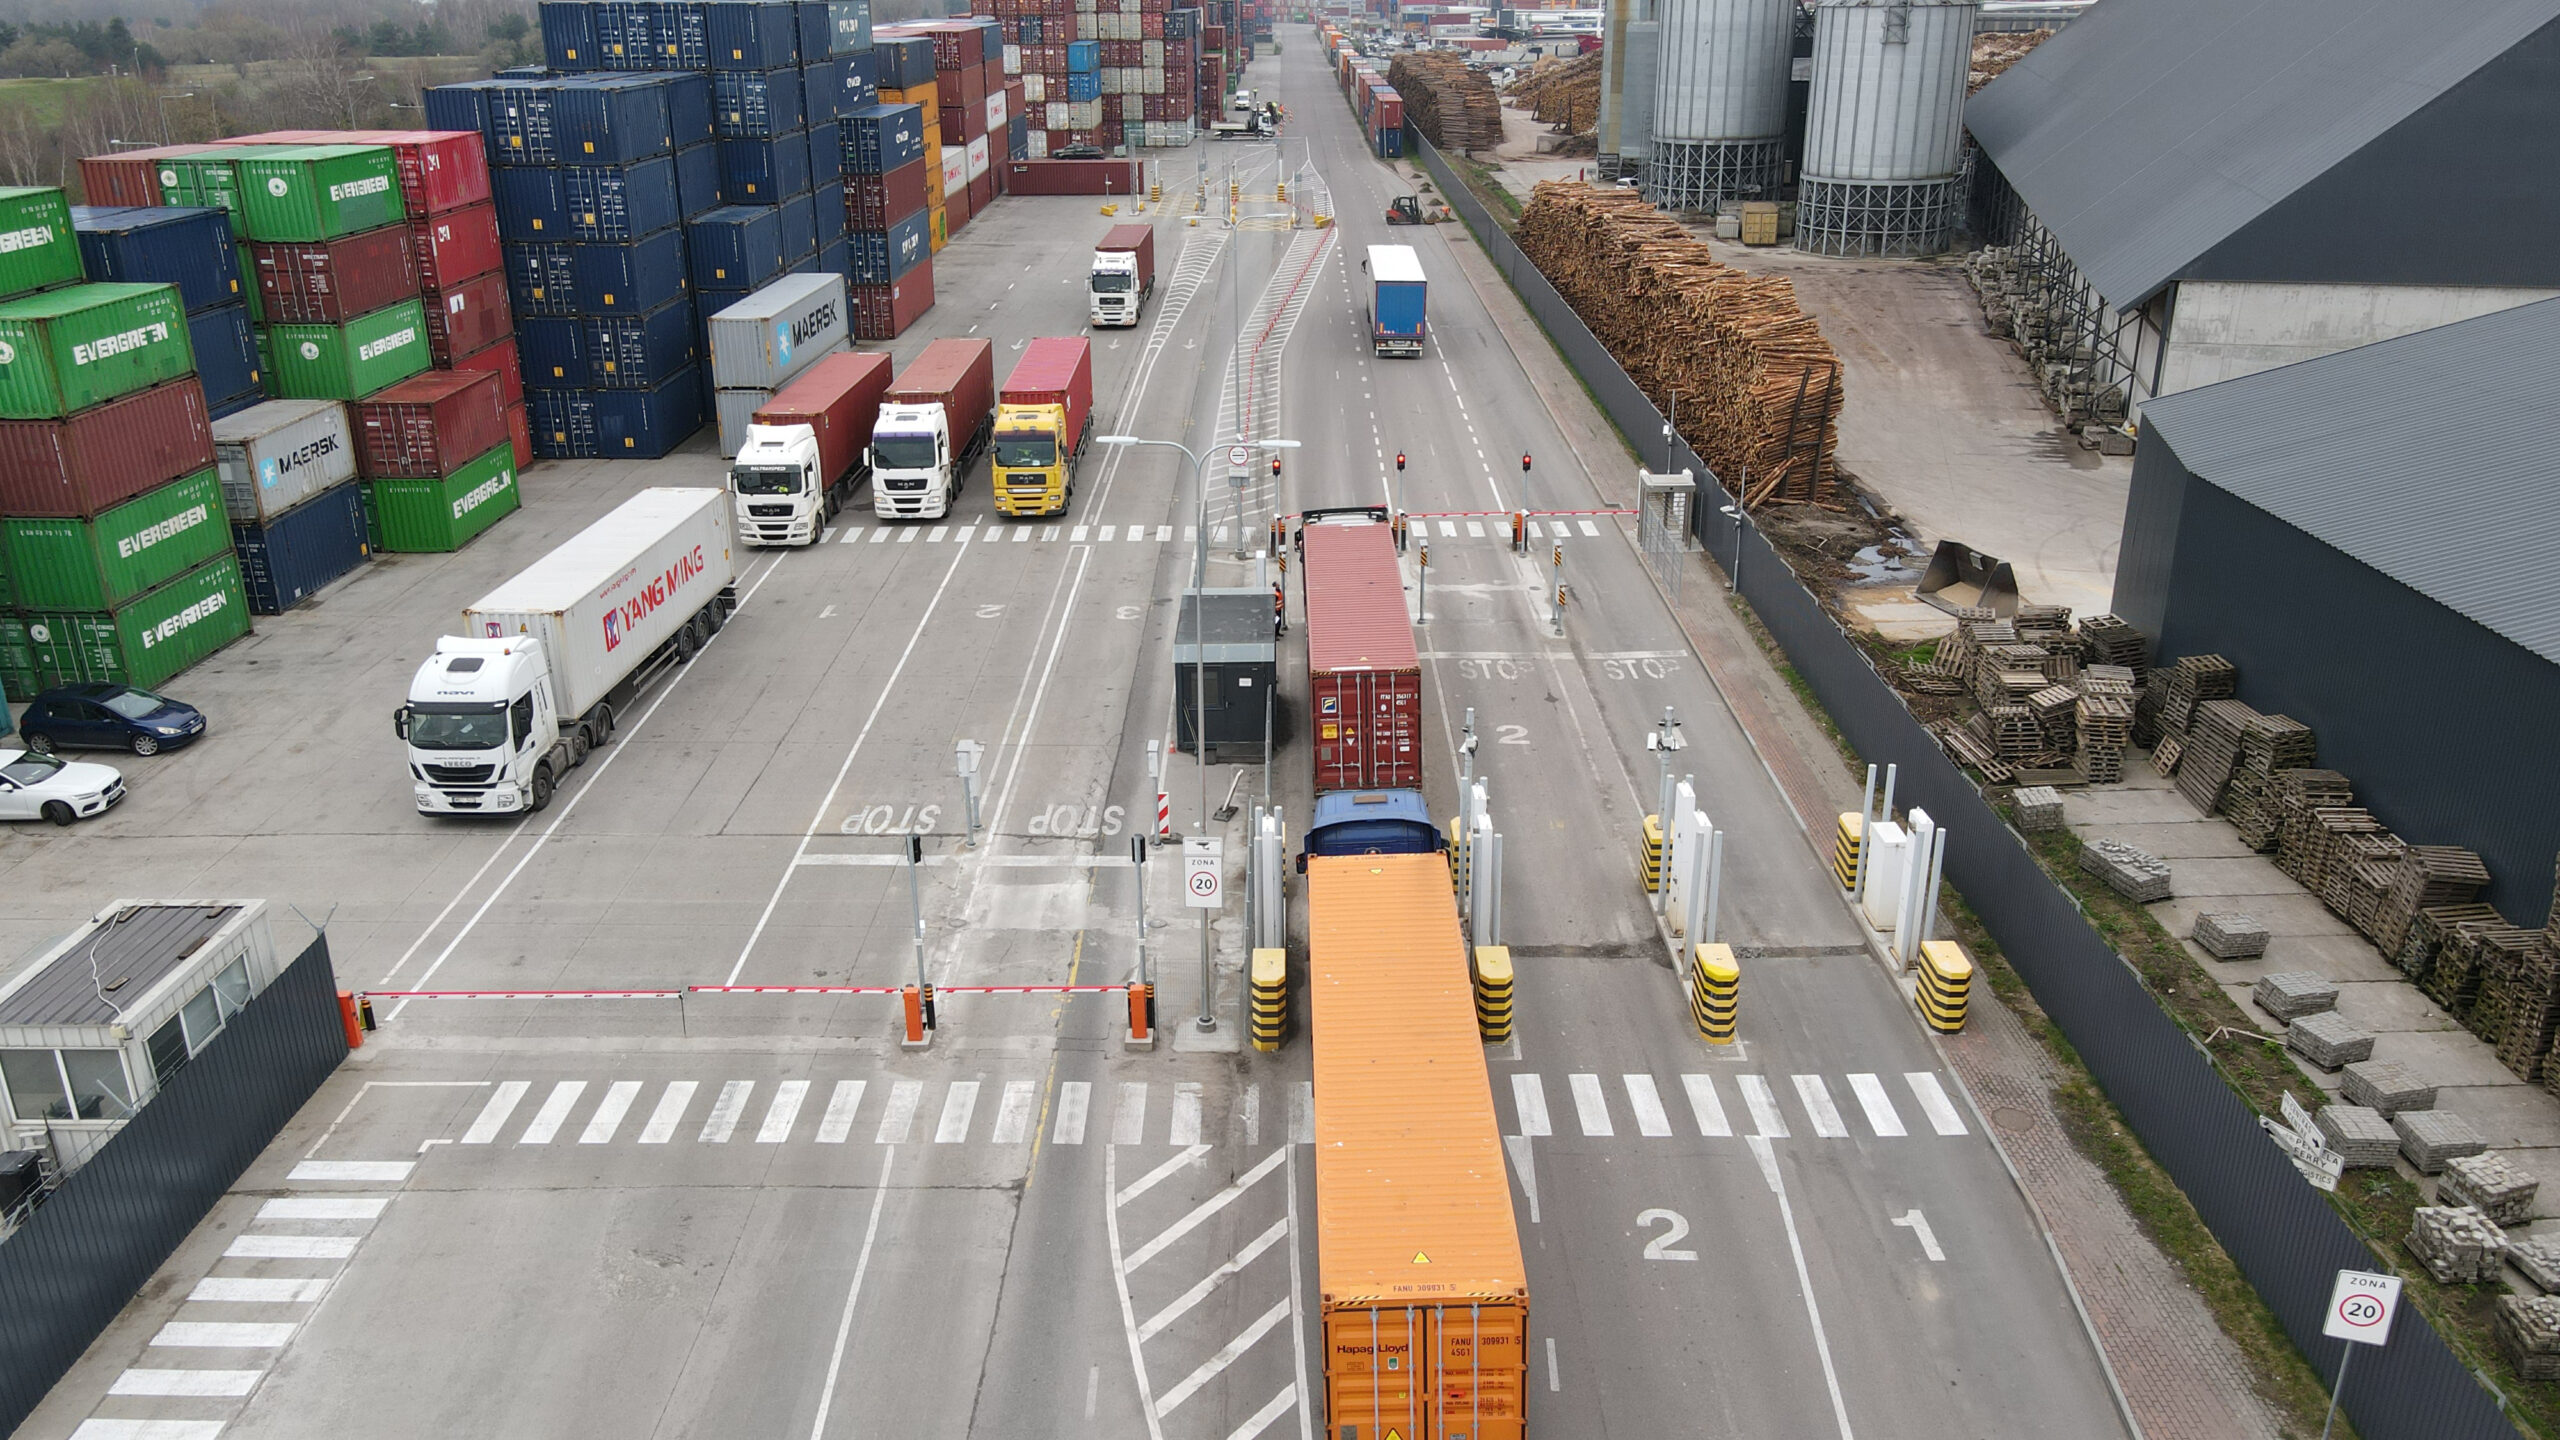 Klaipėdos konteinerių terminale sėkmingai įdiegta automatinių vartų sistema